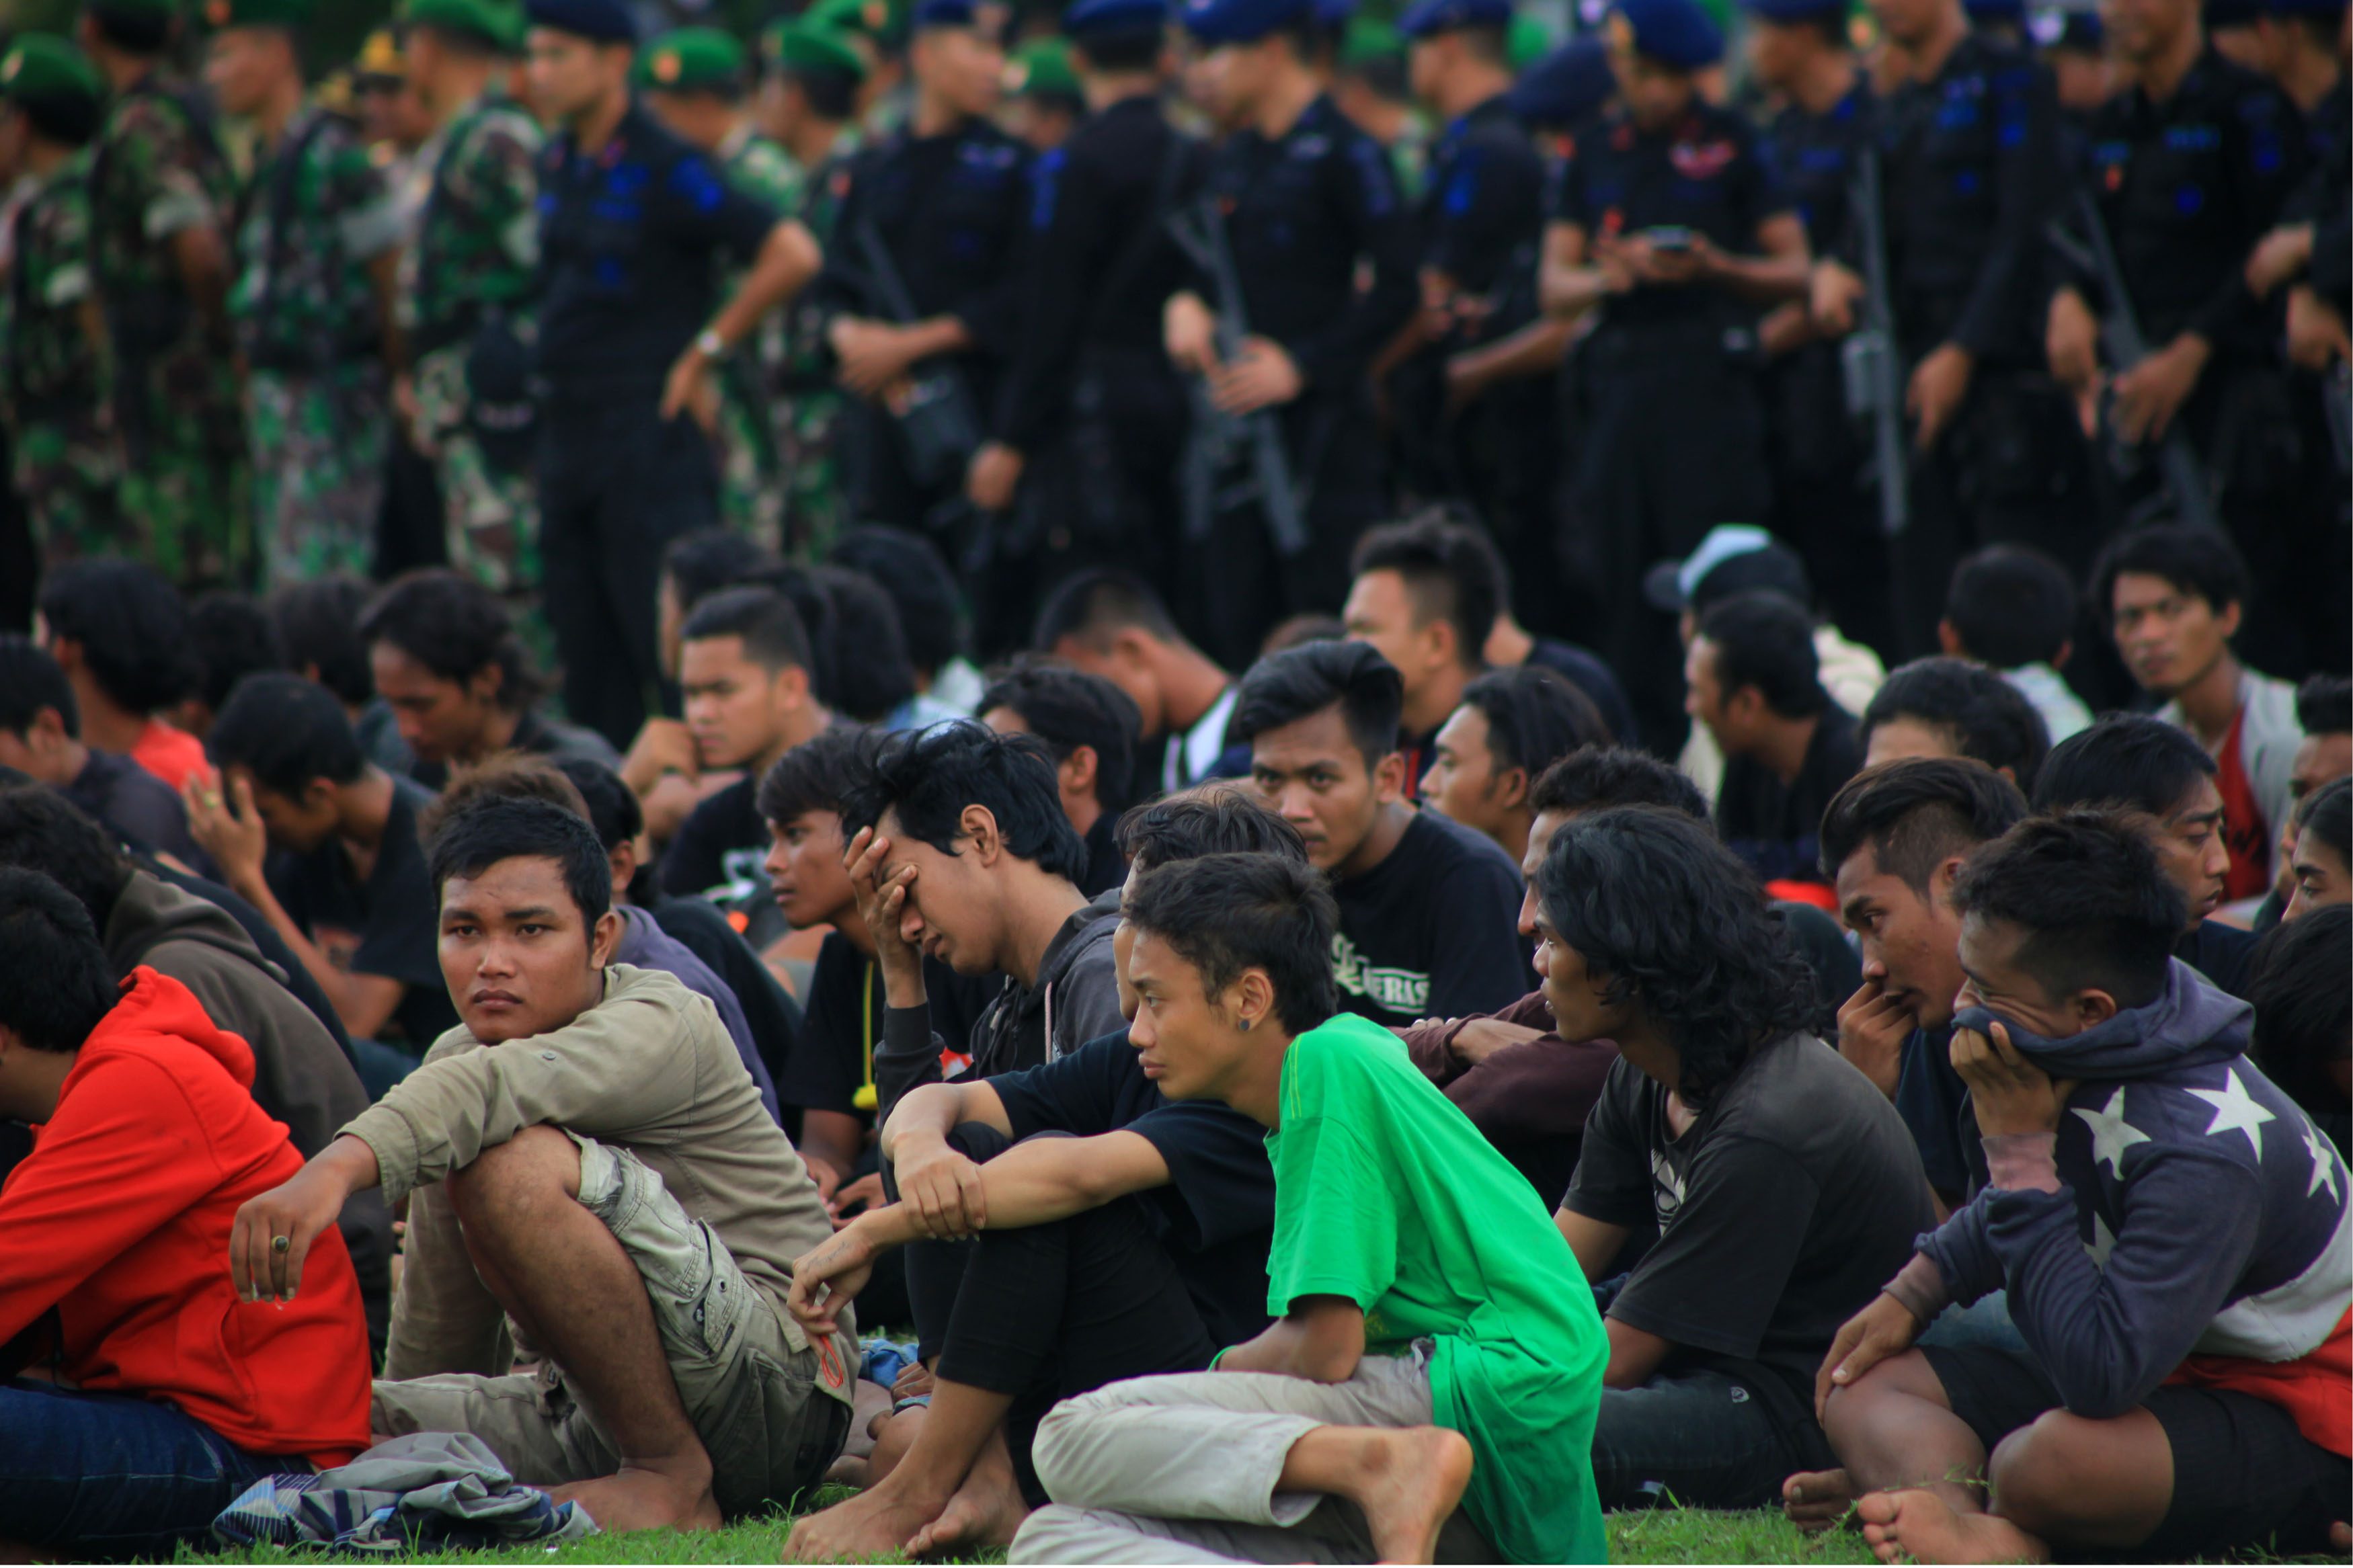 PEMERIKSAAN. Ratusan orang dikumpukan untuk menjalani pemeriksaan polisi setelah terlibat bentrokan dengan pendukung Arema Cronus di Lapangan Mapolres Sragen, Jawa Tengah, pada 19 Desember 2015. Foto oleh Maulana Surya/Antara Foto 